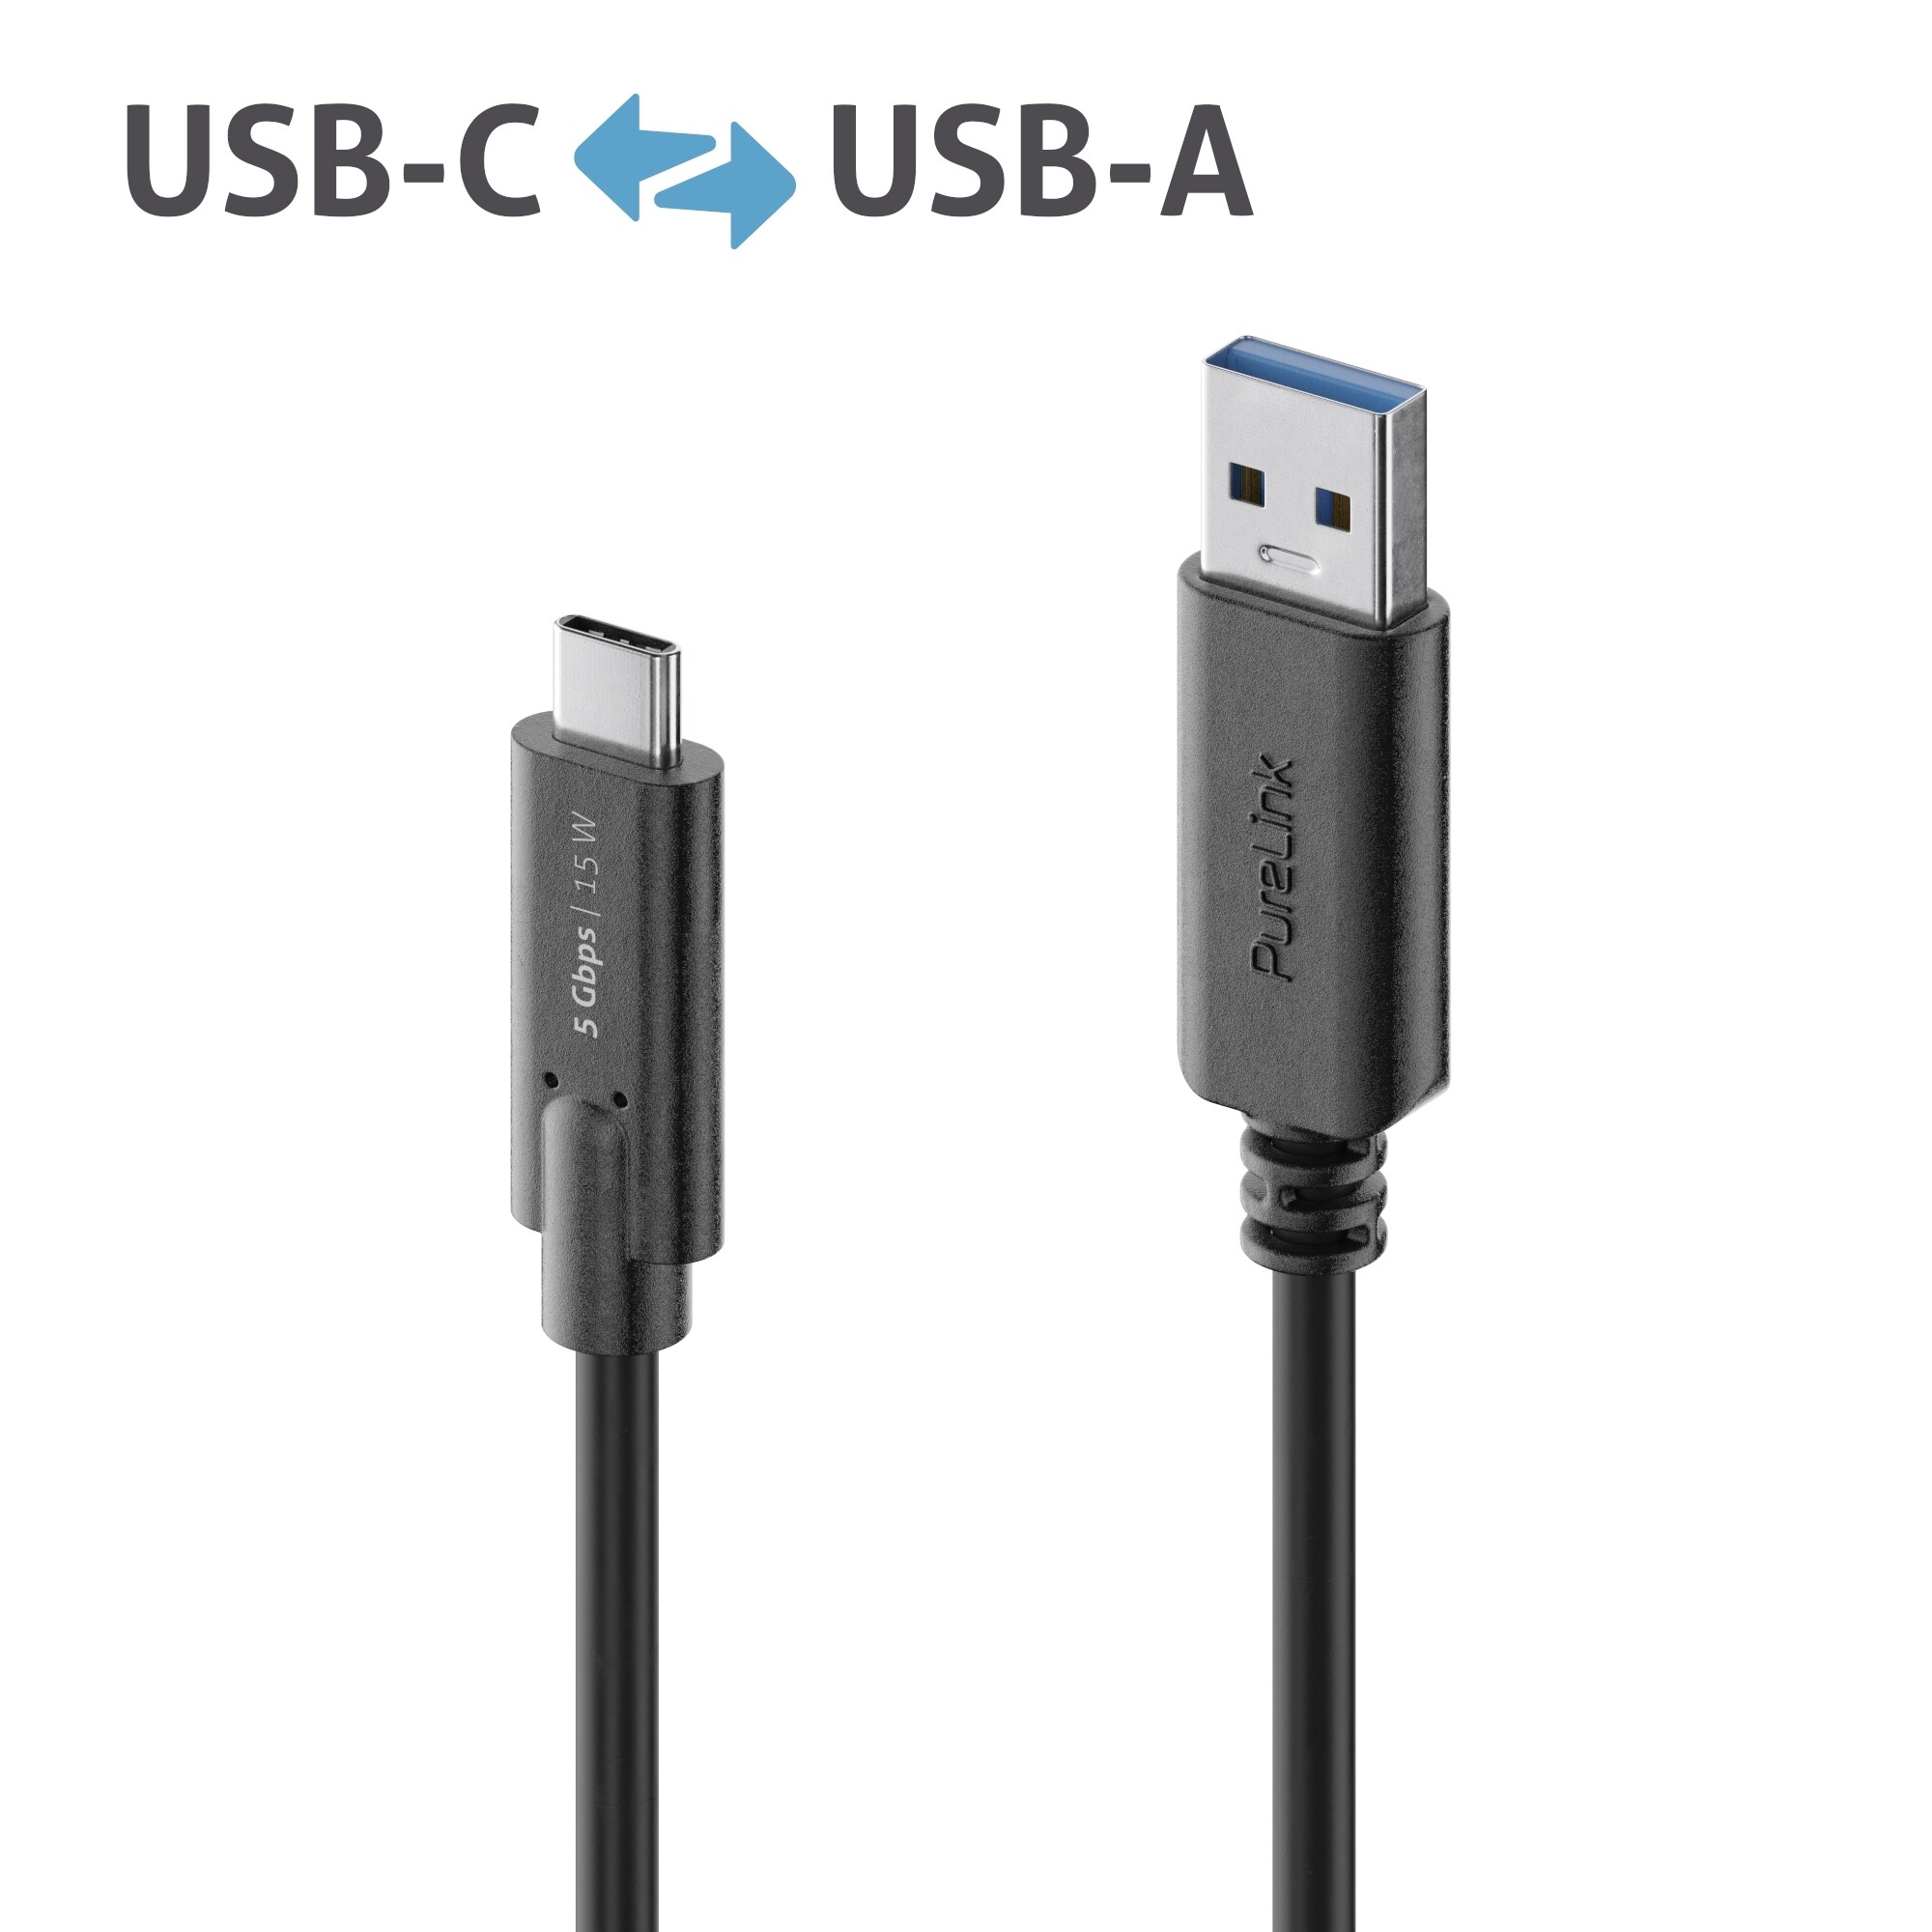 Purelink-IS2601-010-USB-C-auf-USB-A-Kabel-1m-schwarz